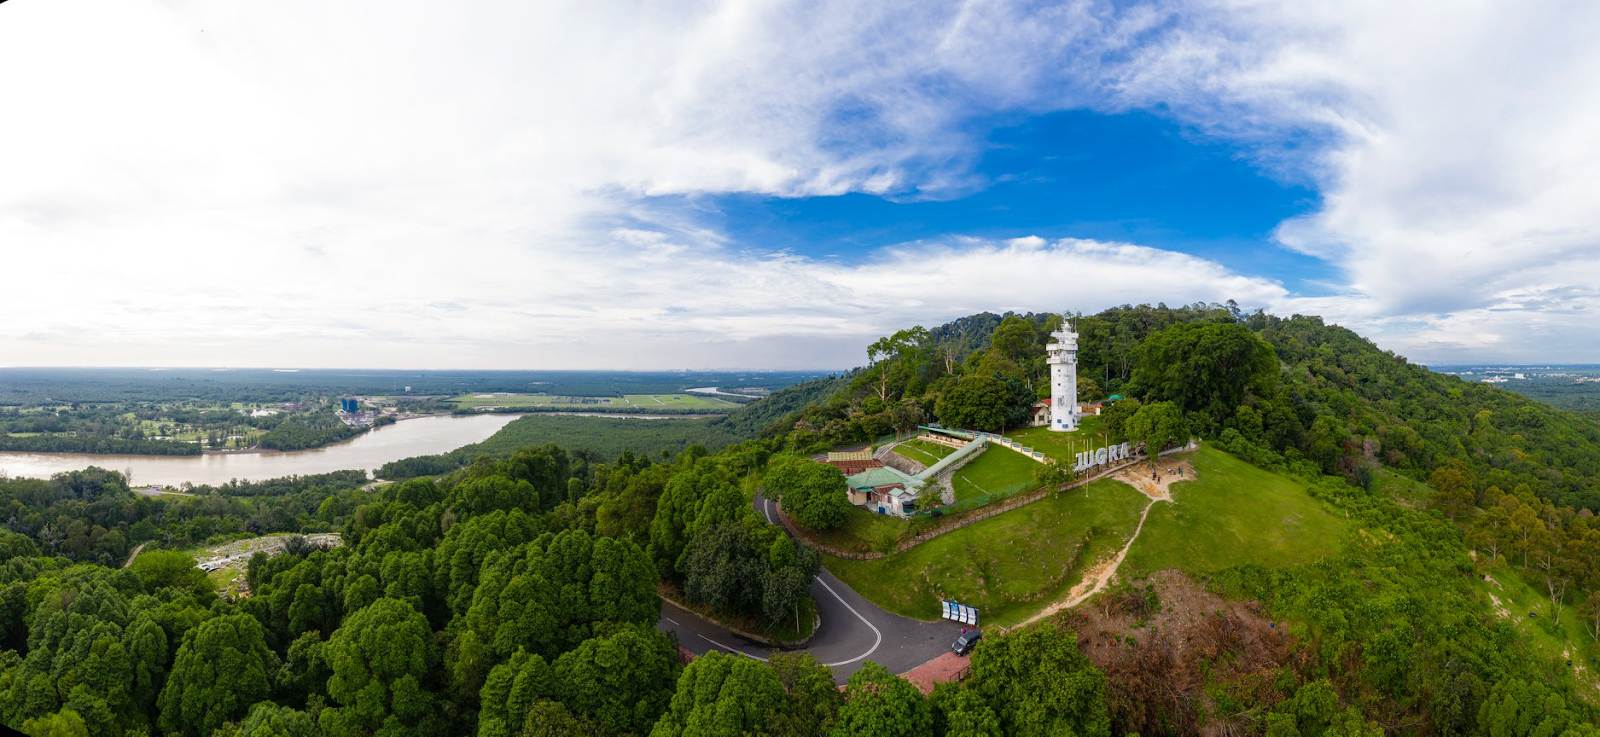 Lighthouses of Malaysia - Bukit Jugra Lighthouse